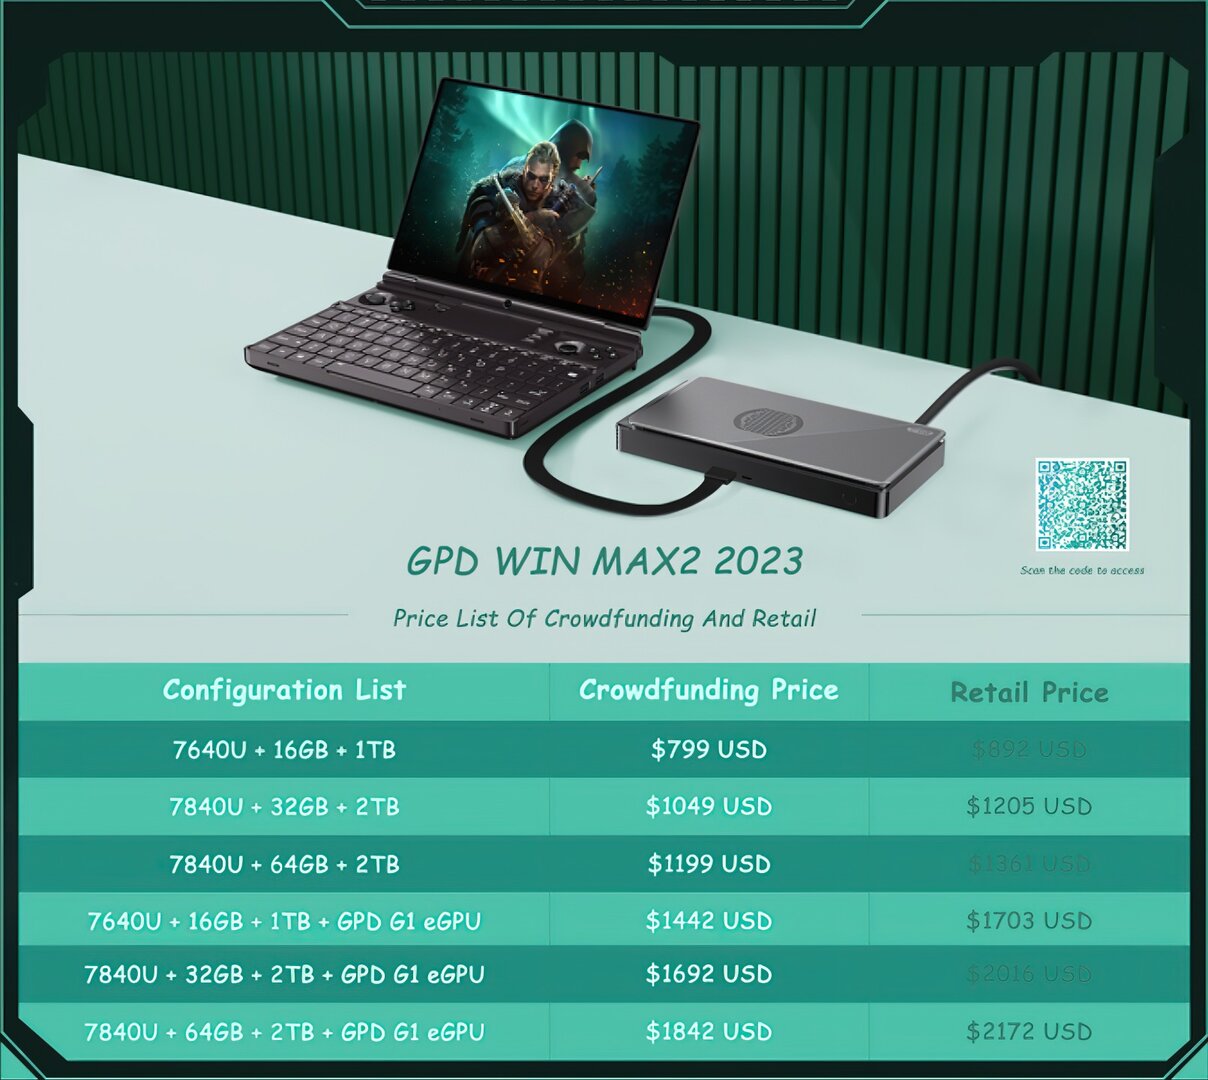 GPD Win Max 2 2023 prices